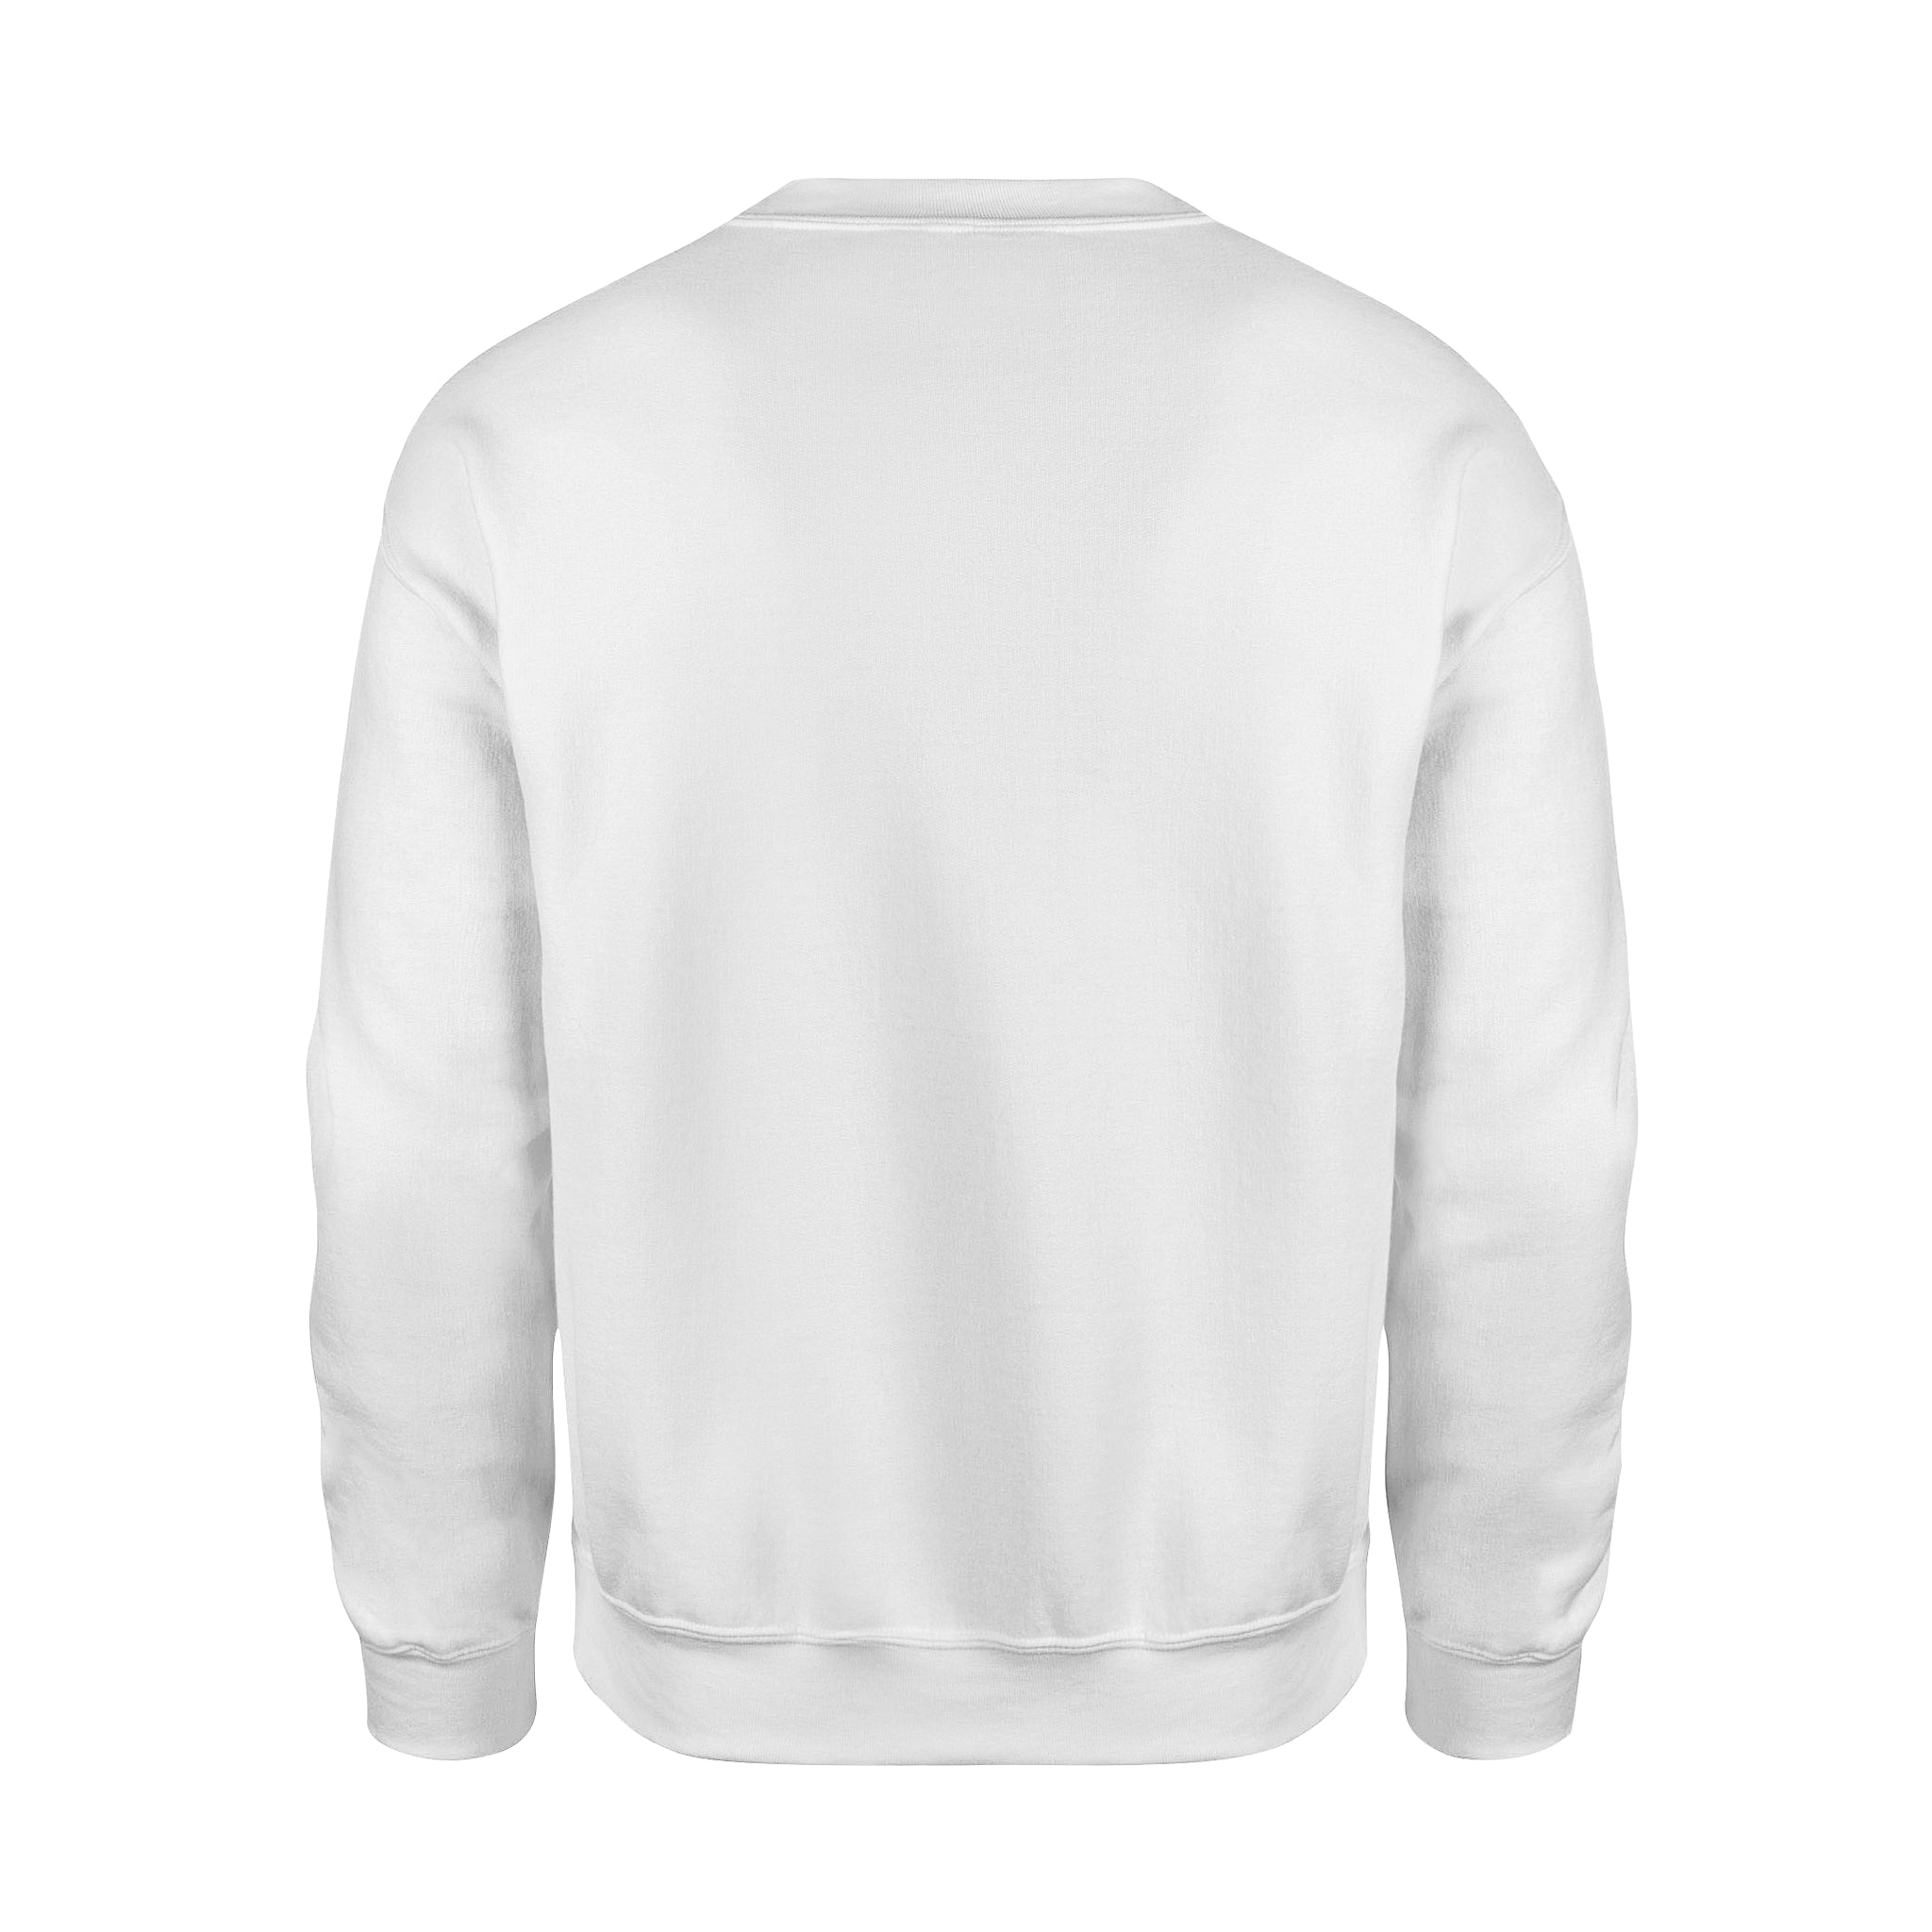 Explore More -  Fleece Sweatshirt